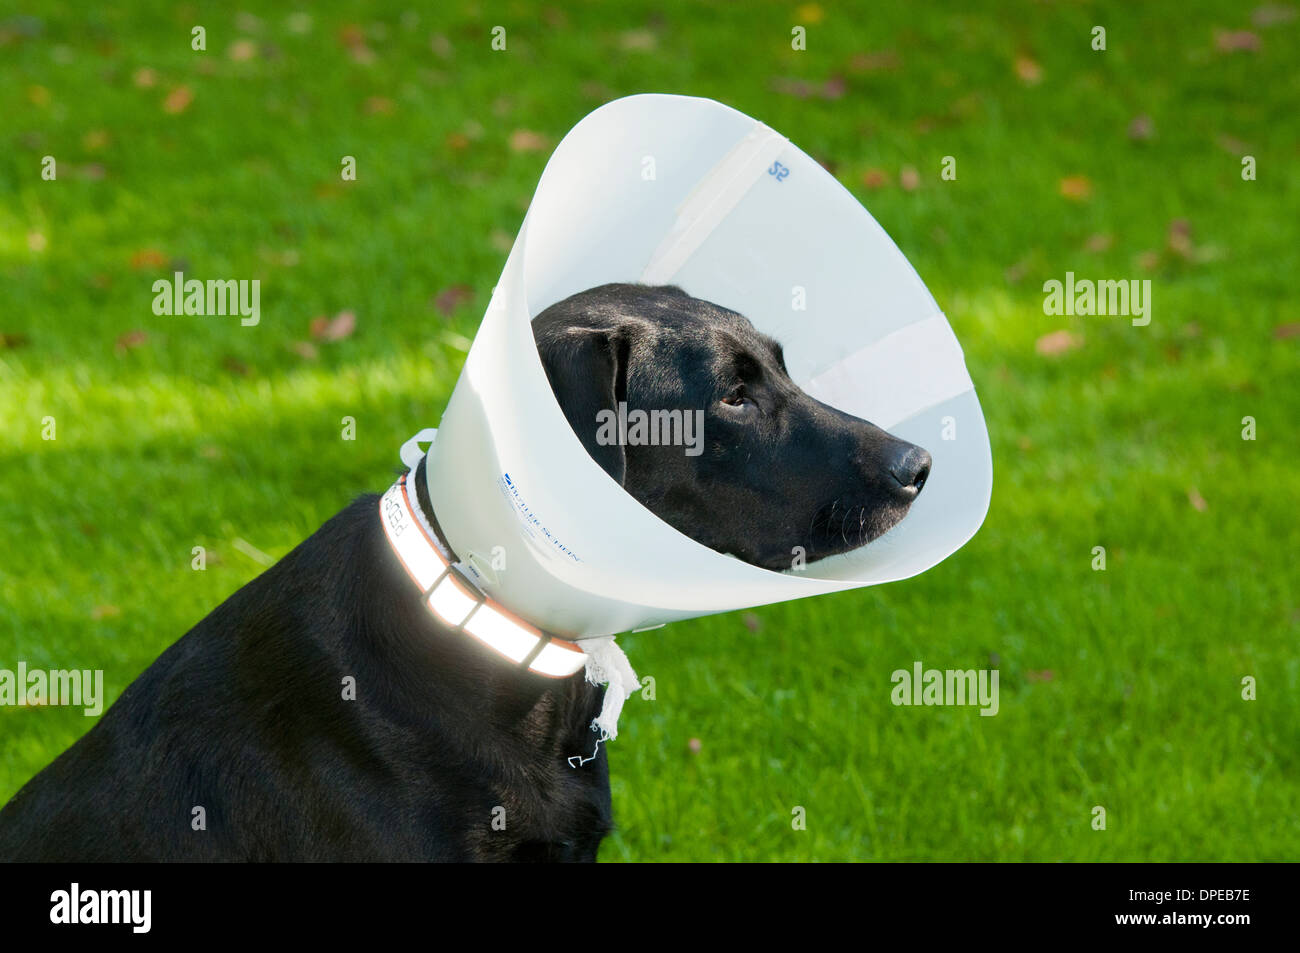 Black Labrador retriever wearing Elizabethan collar Stock Photo